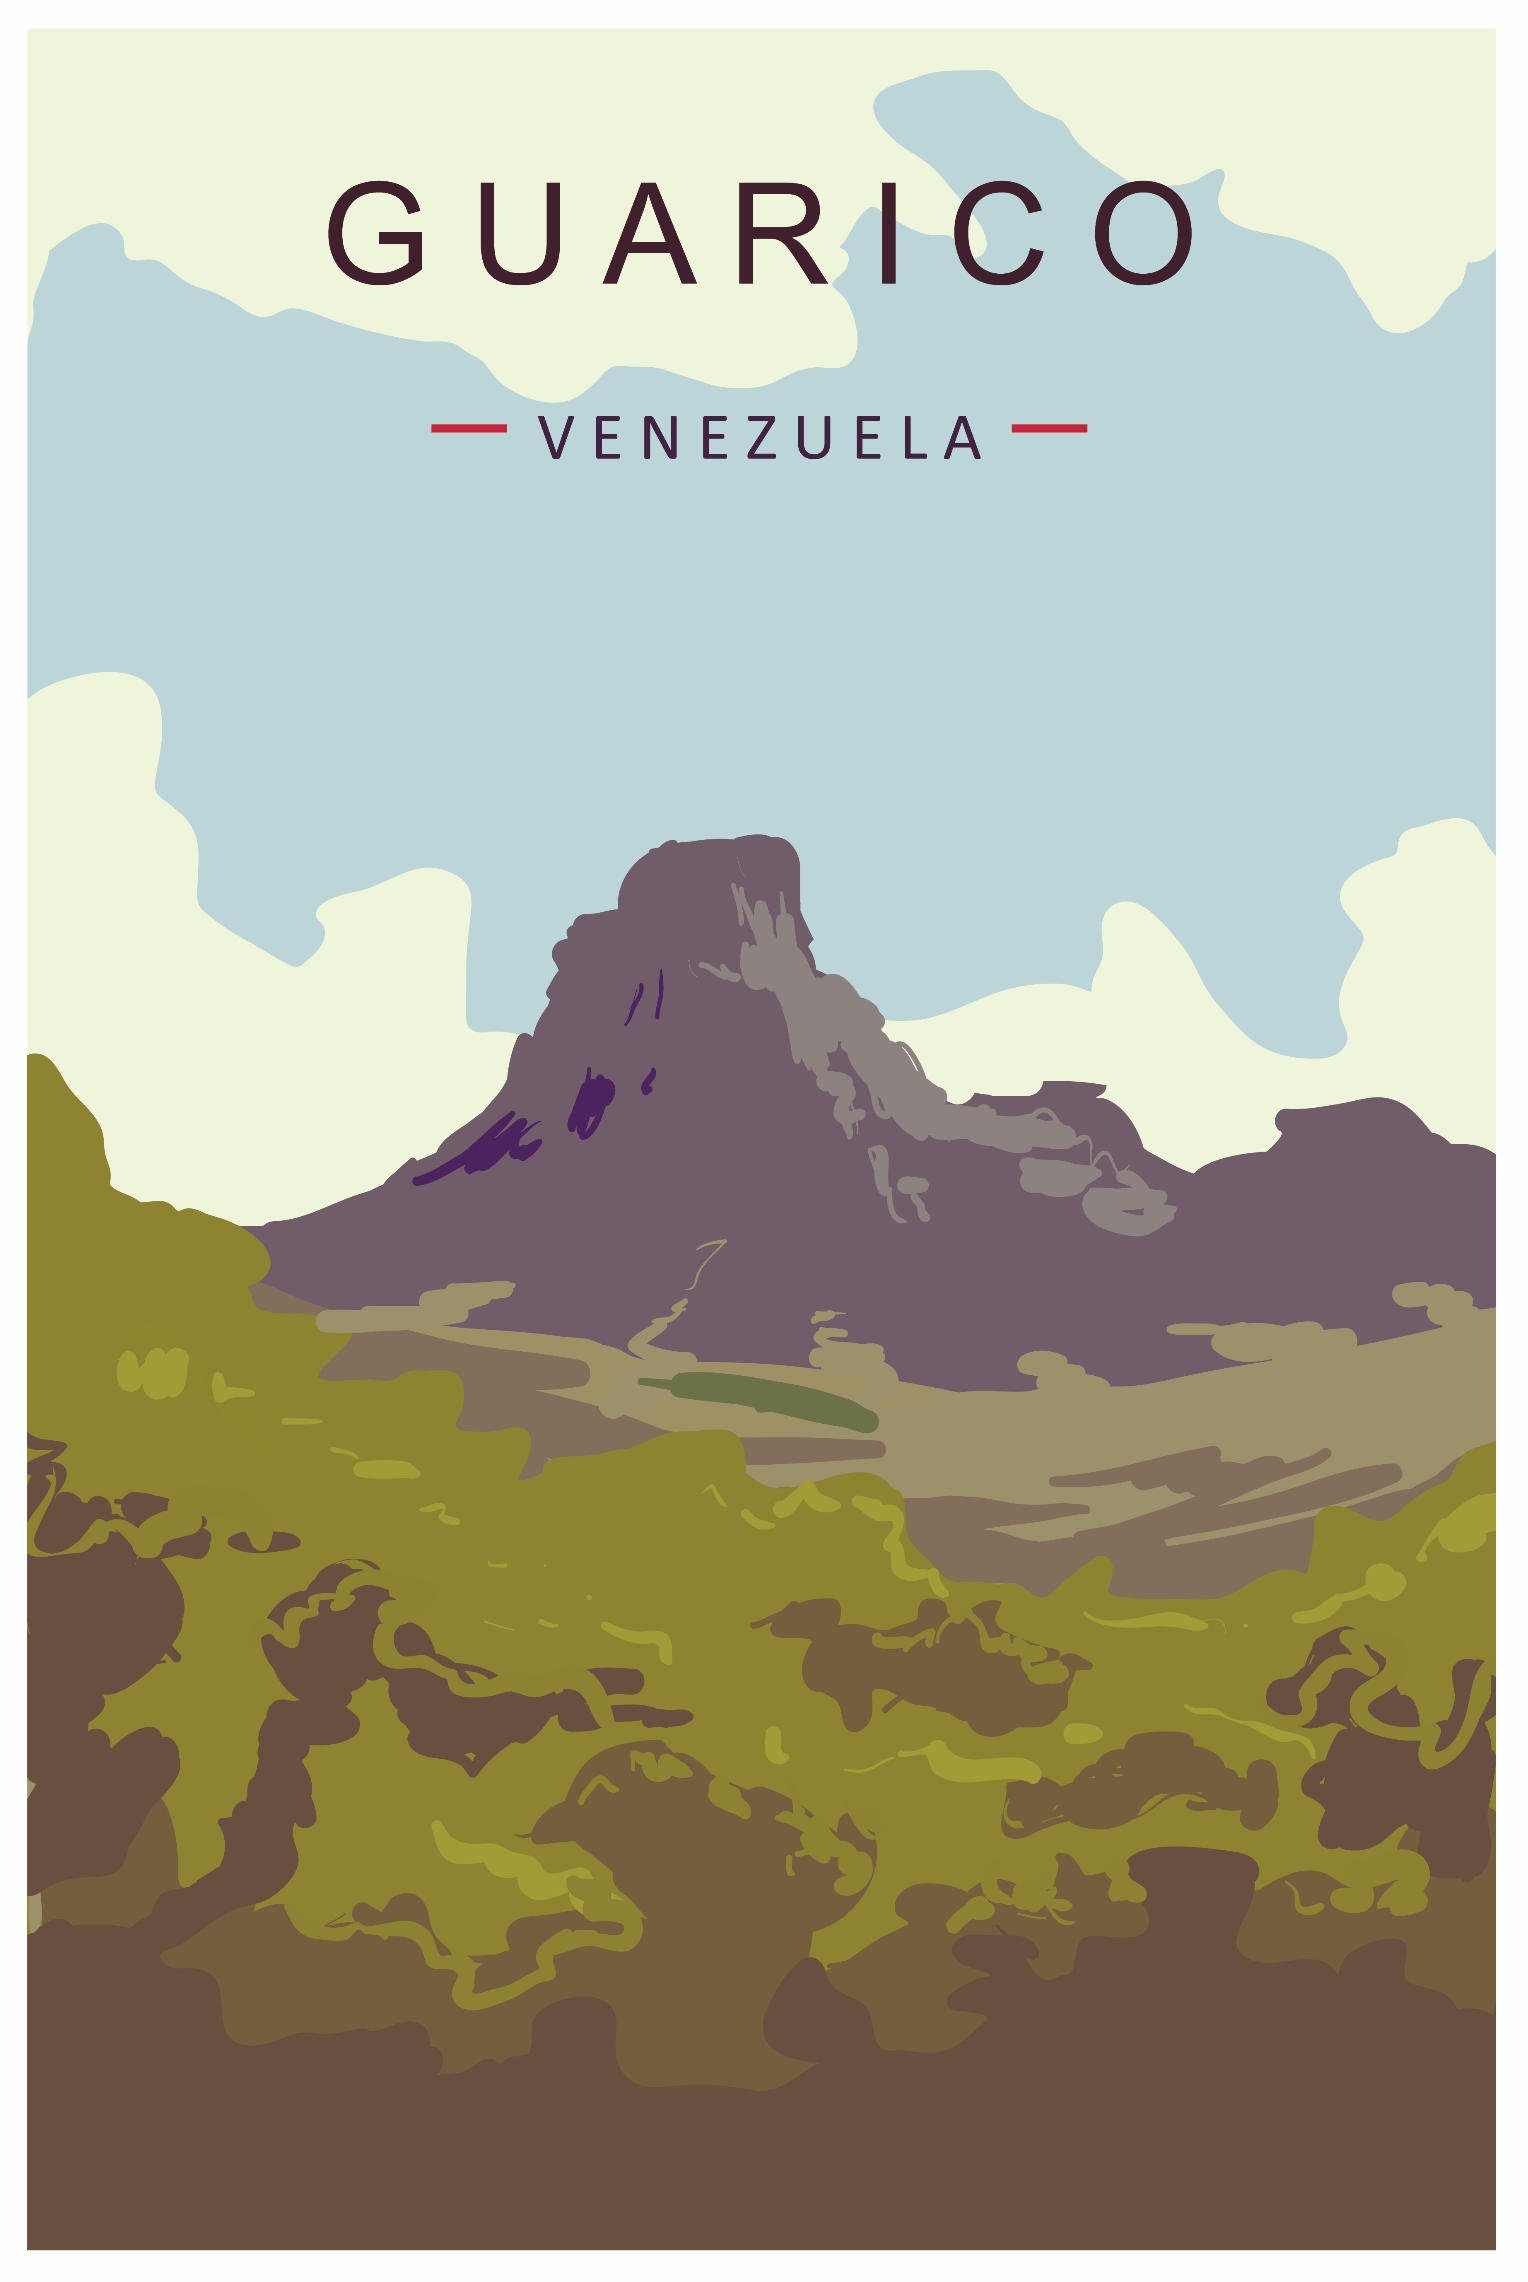 Graphic World  - Guarico Venezuela